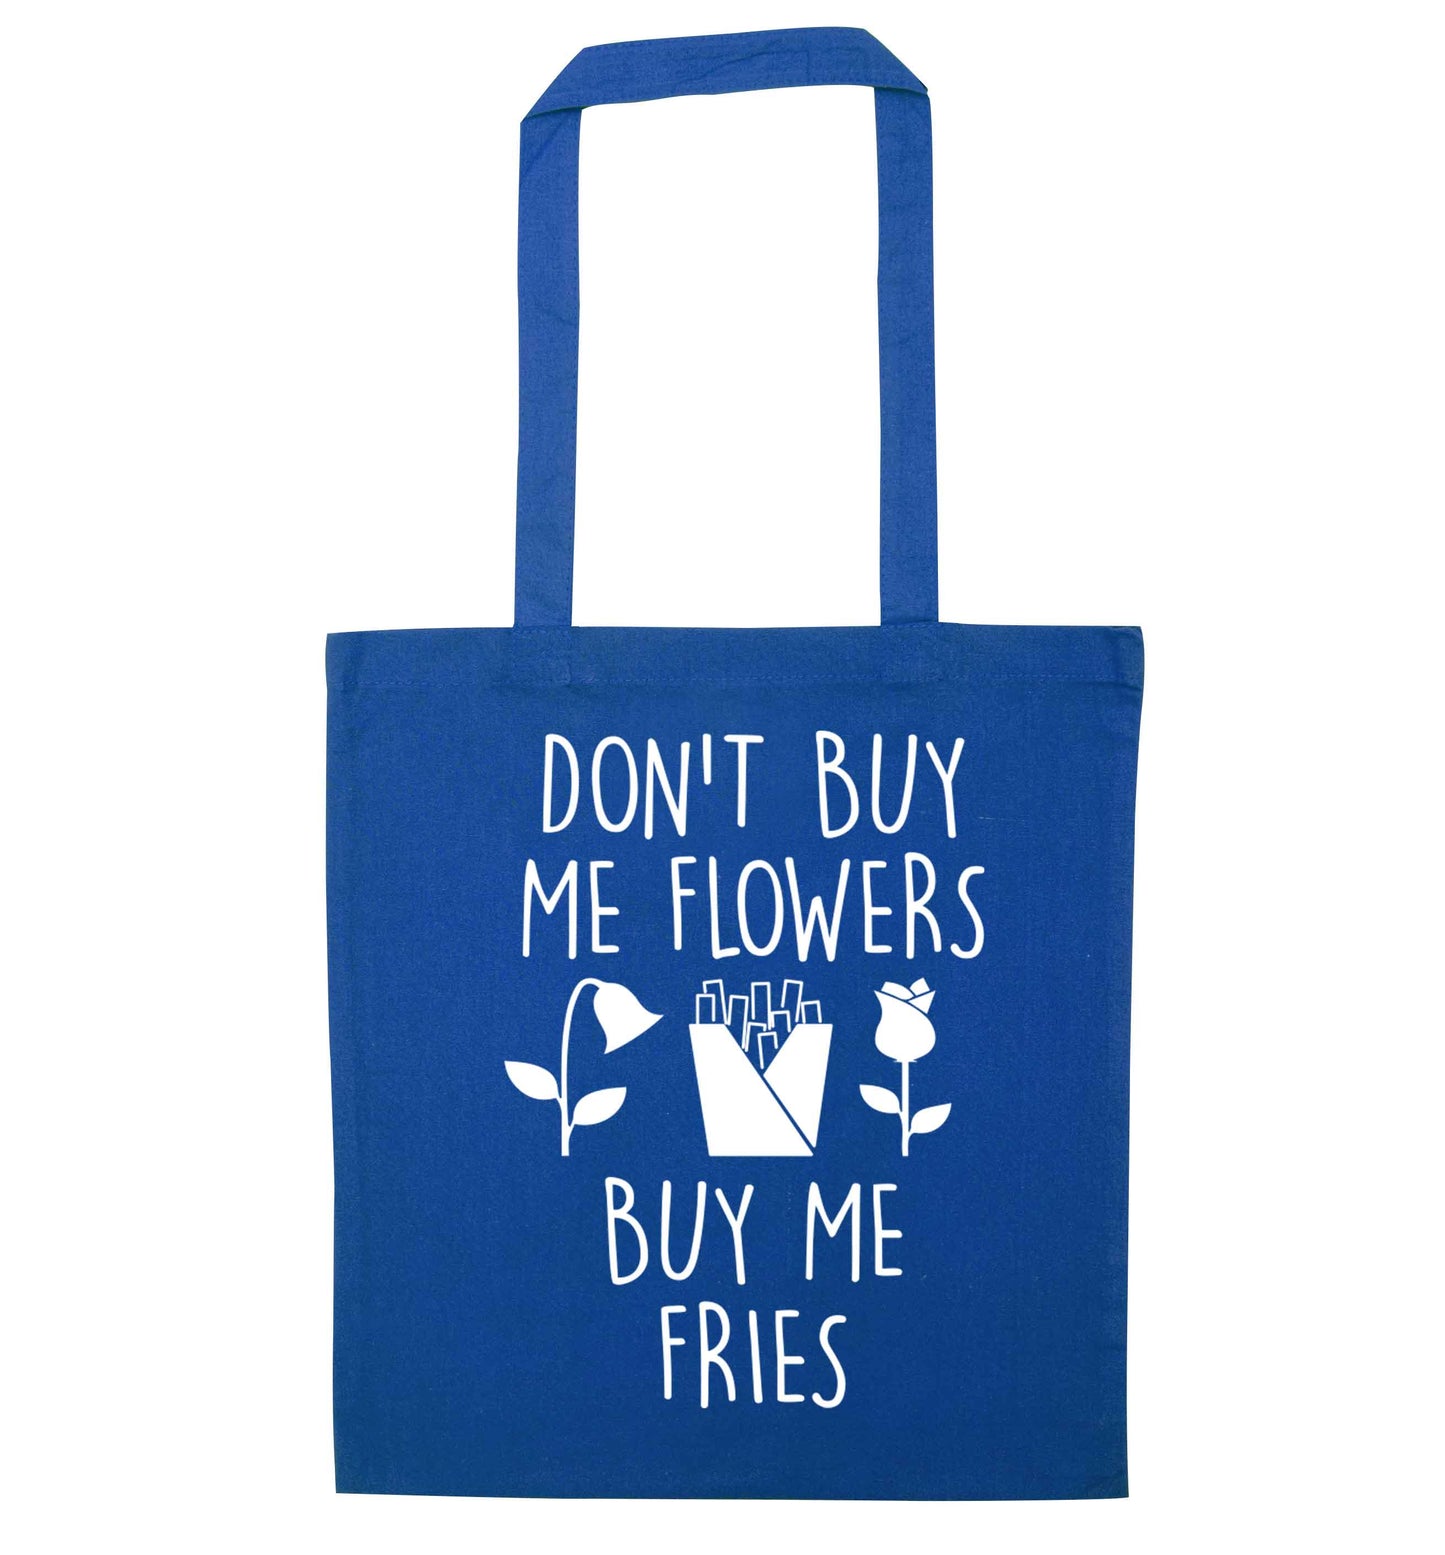 Don't buy me flowers buy me fries blue tote bag